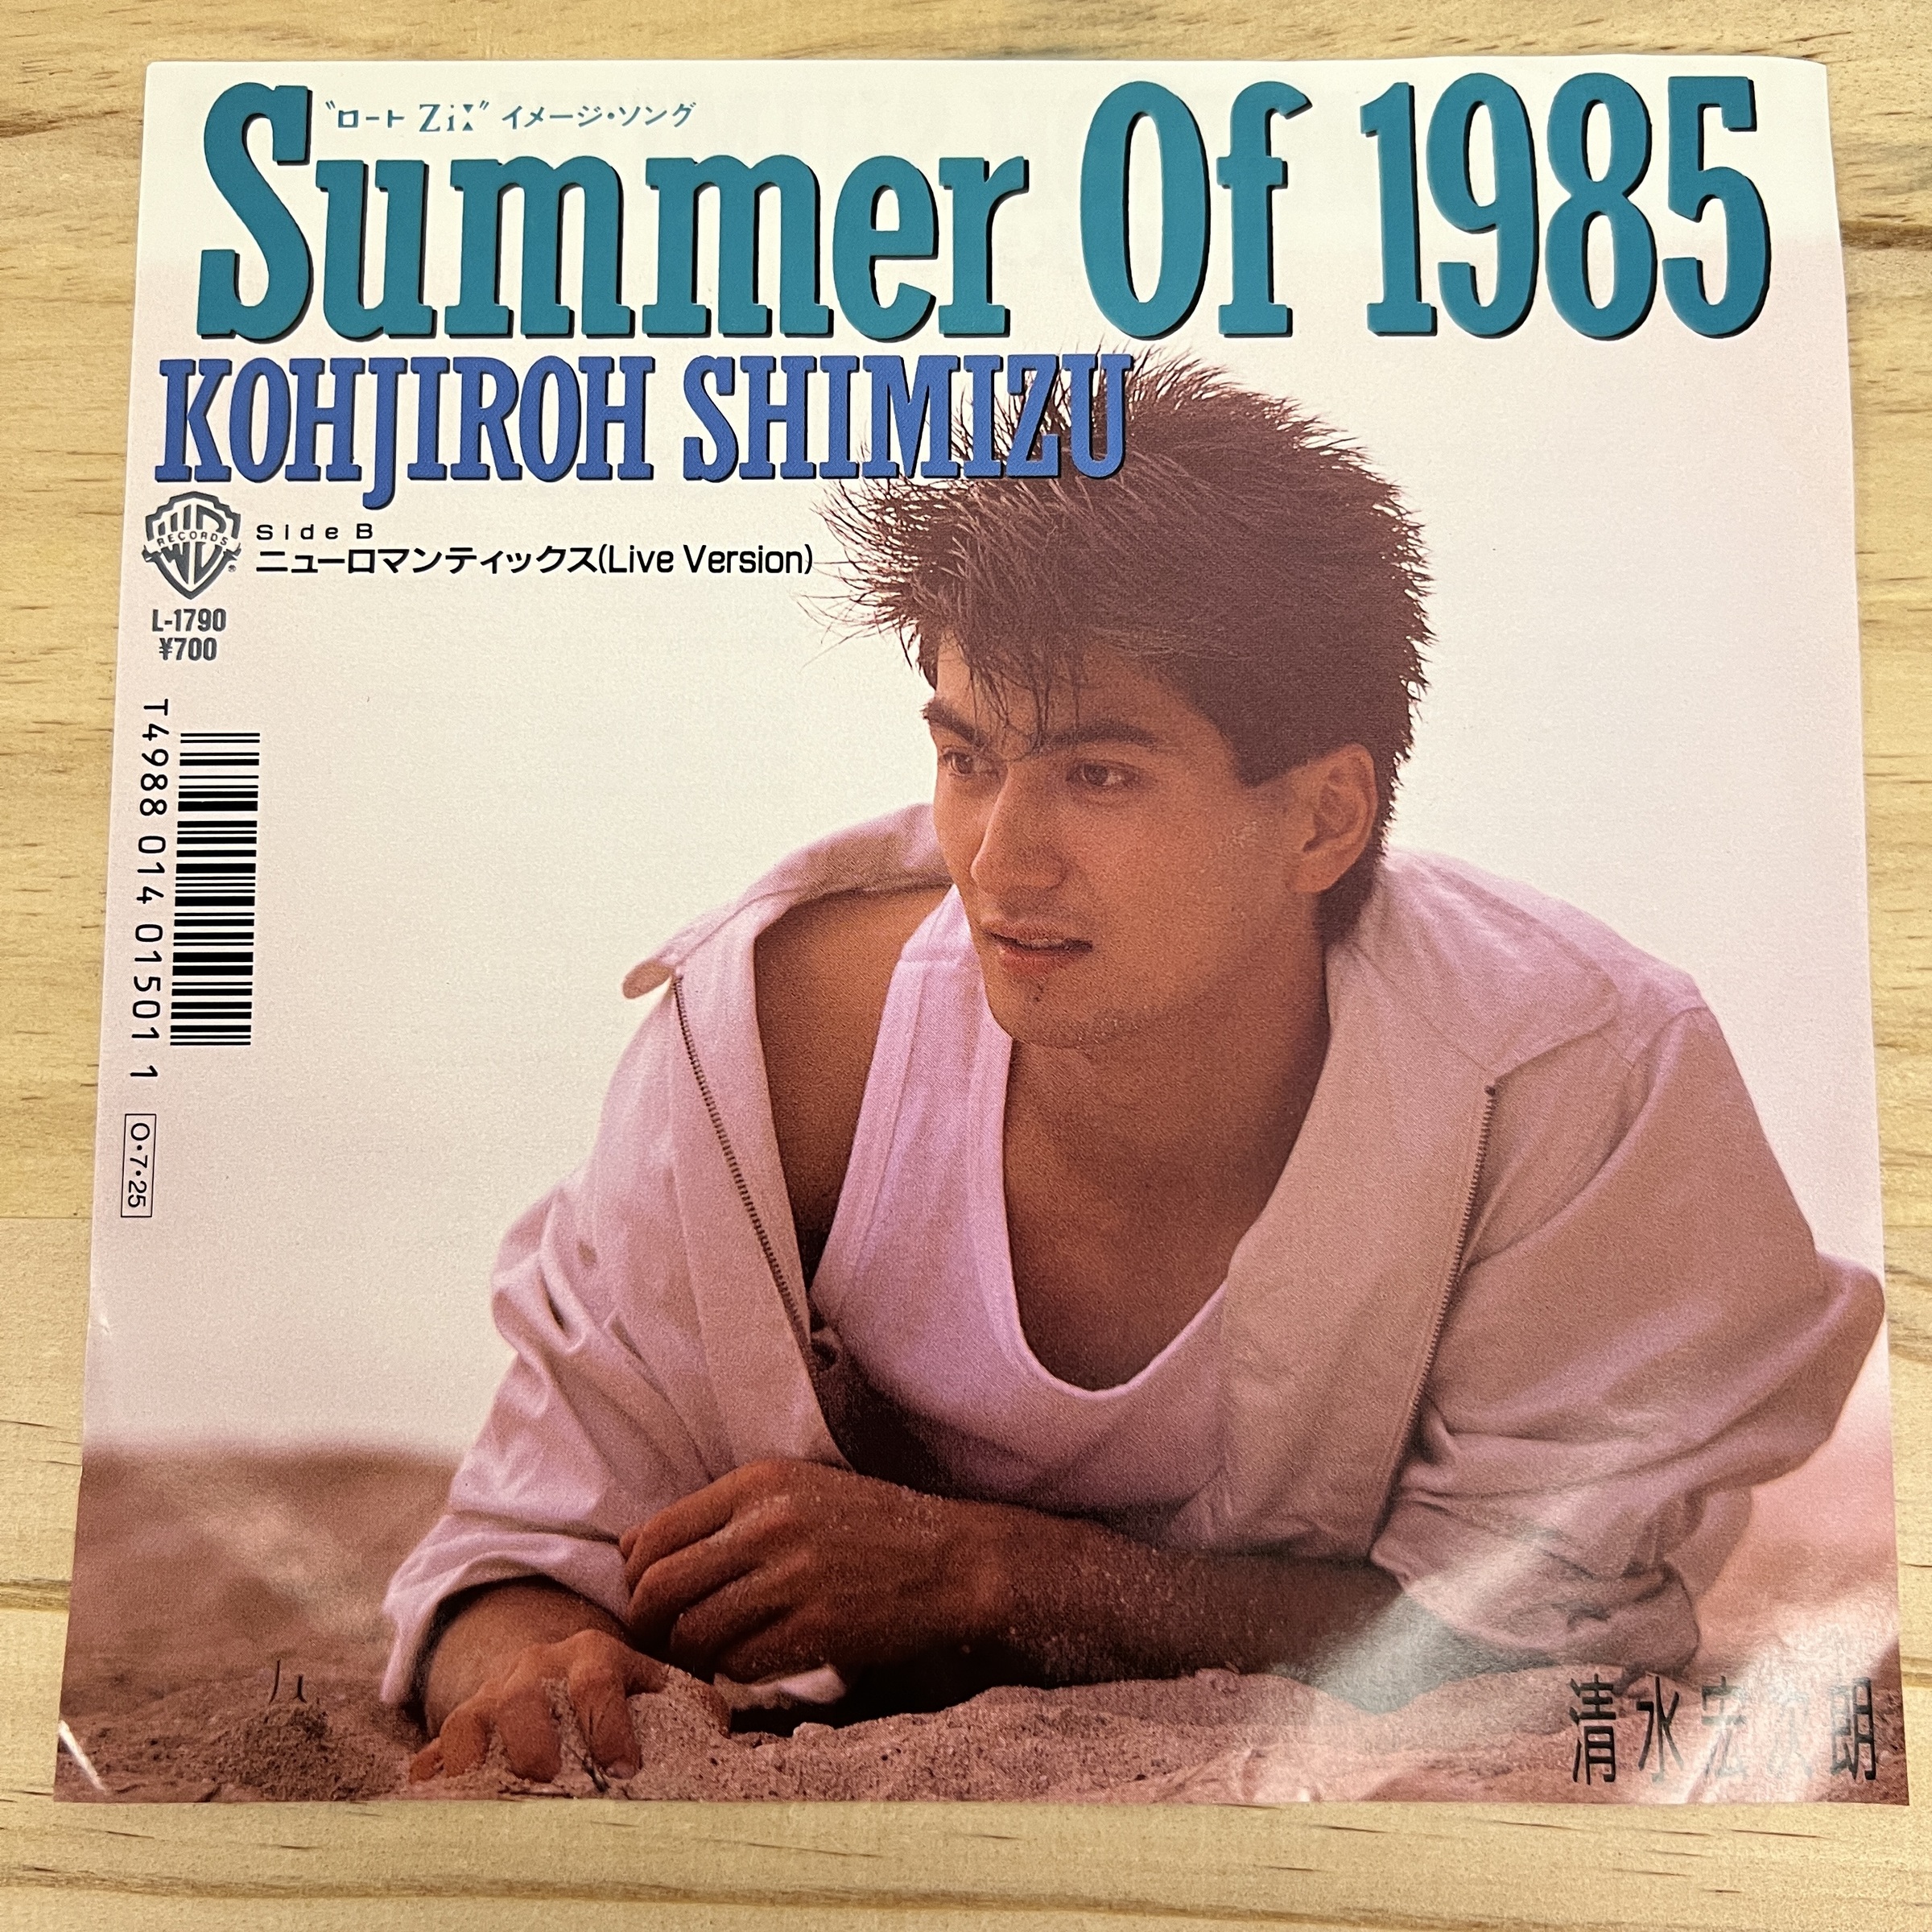 清水宏次朗 – Summer Of 1985 / ニューロマンティックス (Live Version 